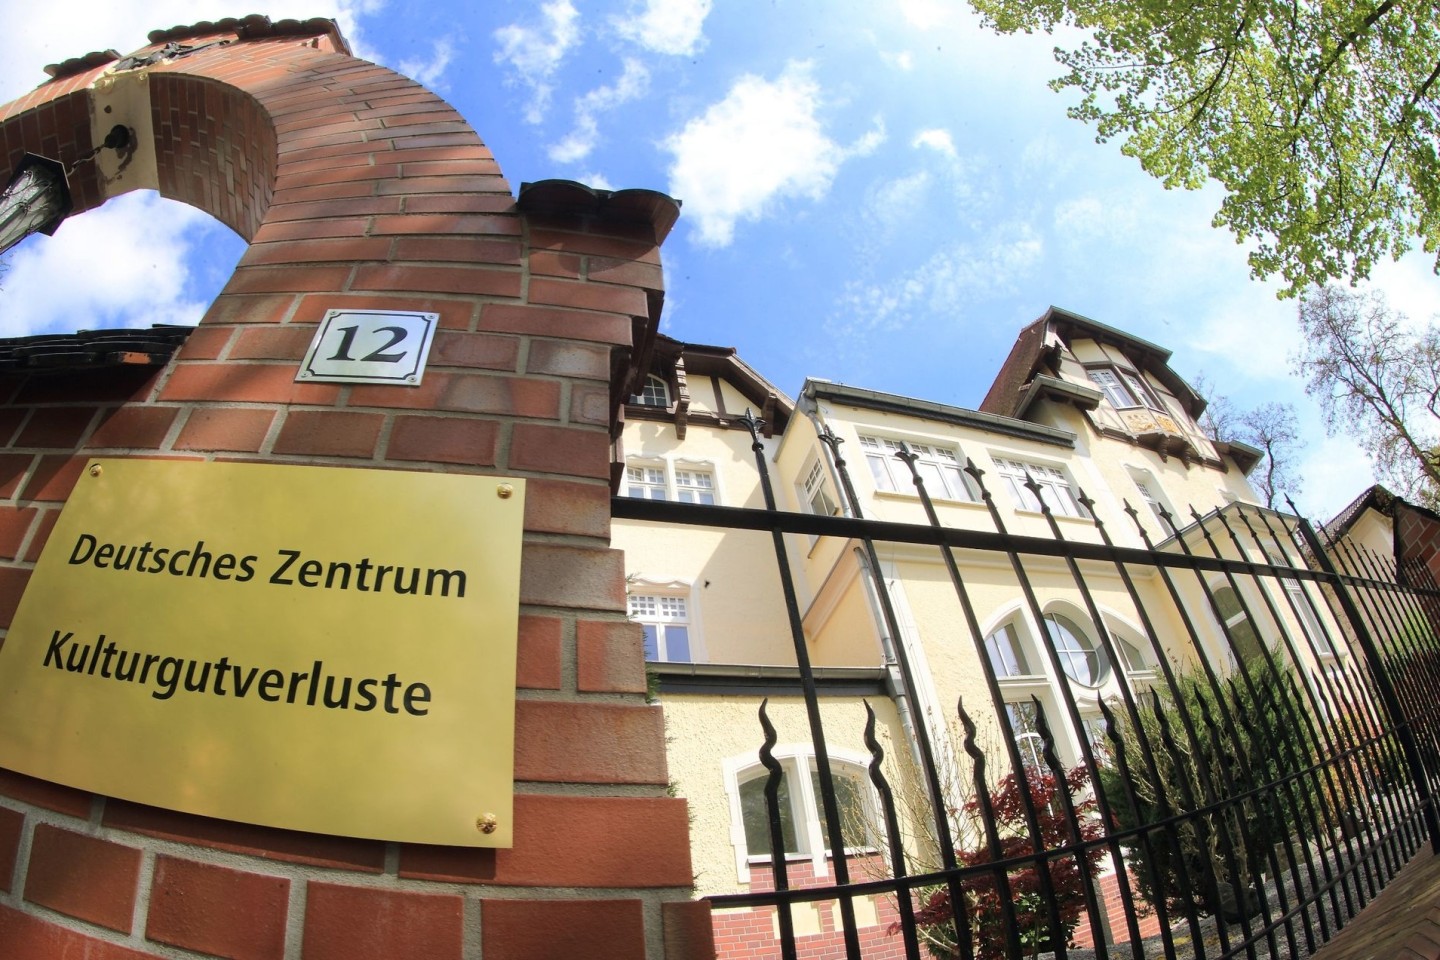 Der Sitz des Deutschen Zentrums Kulturgutverluste in Magdeburg.